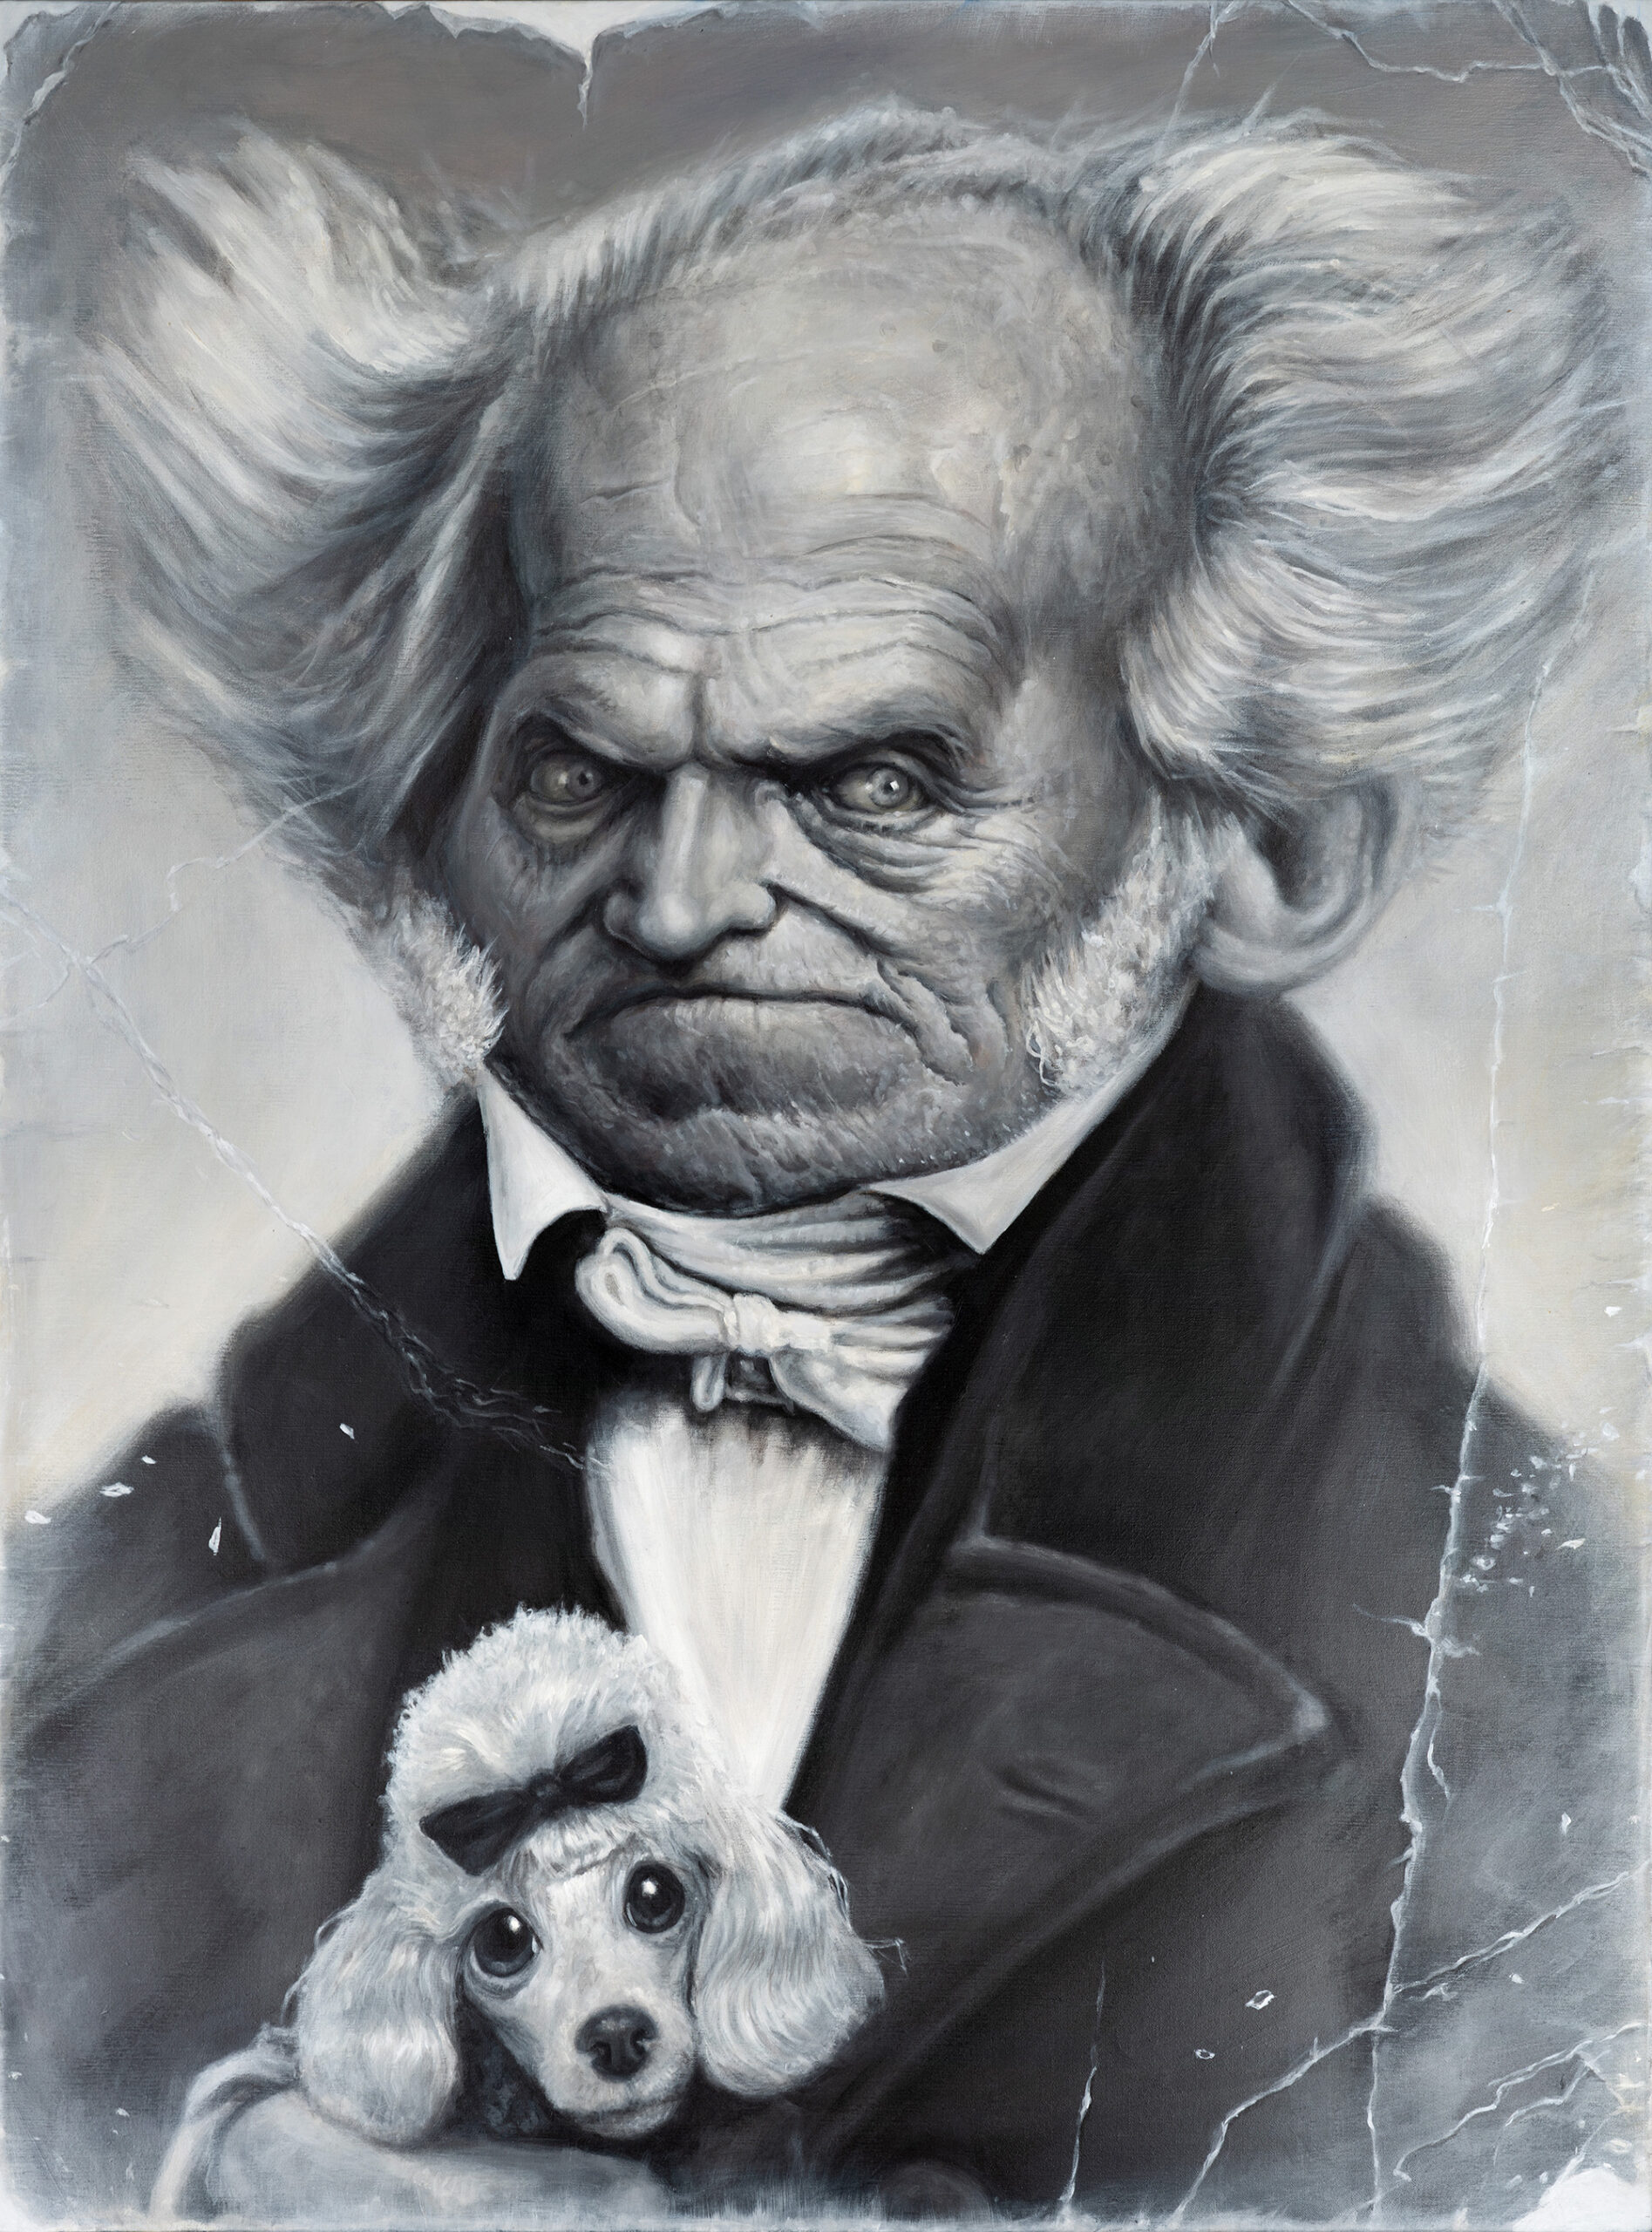 Arthur Schopenhauer portrait by Derren Brown